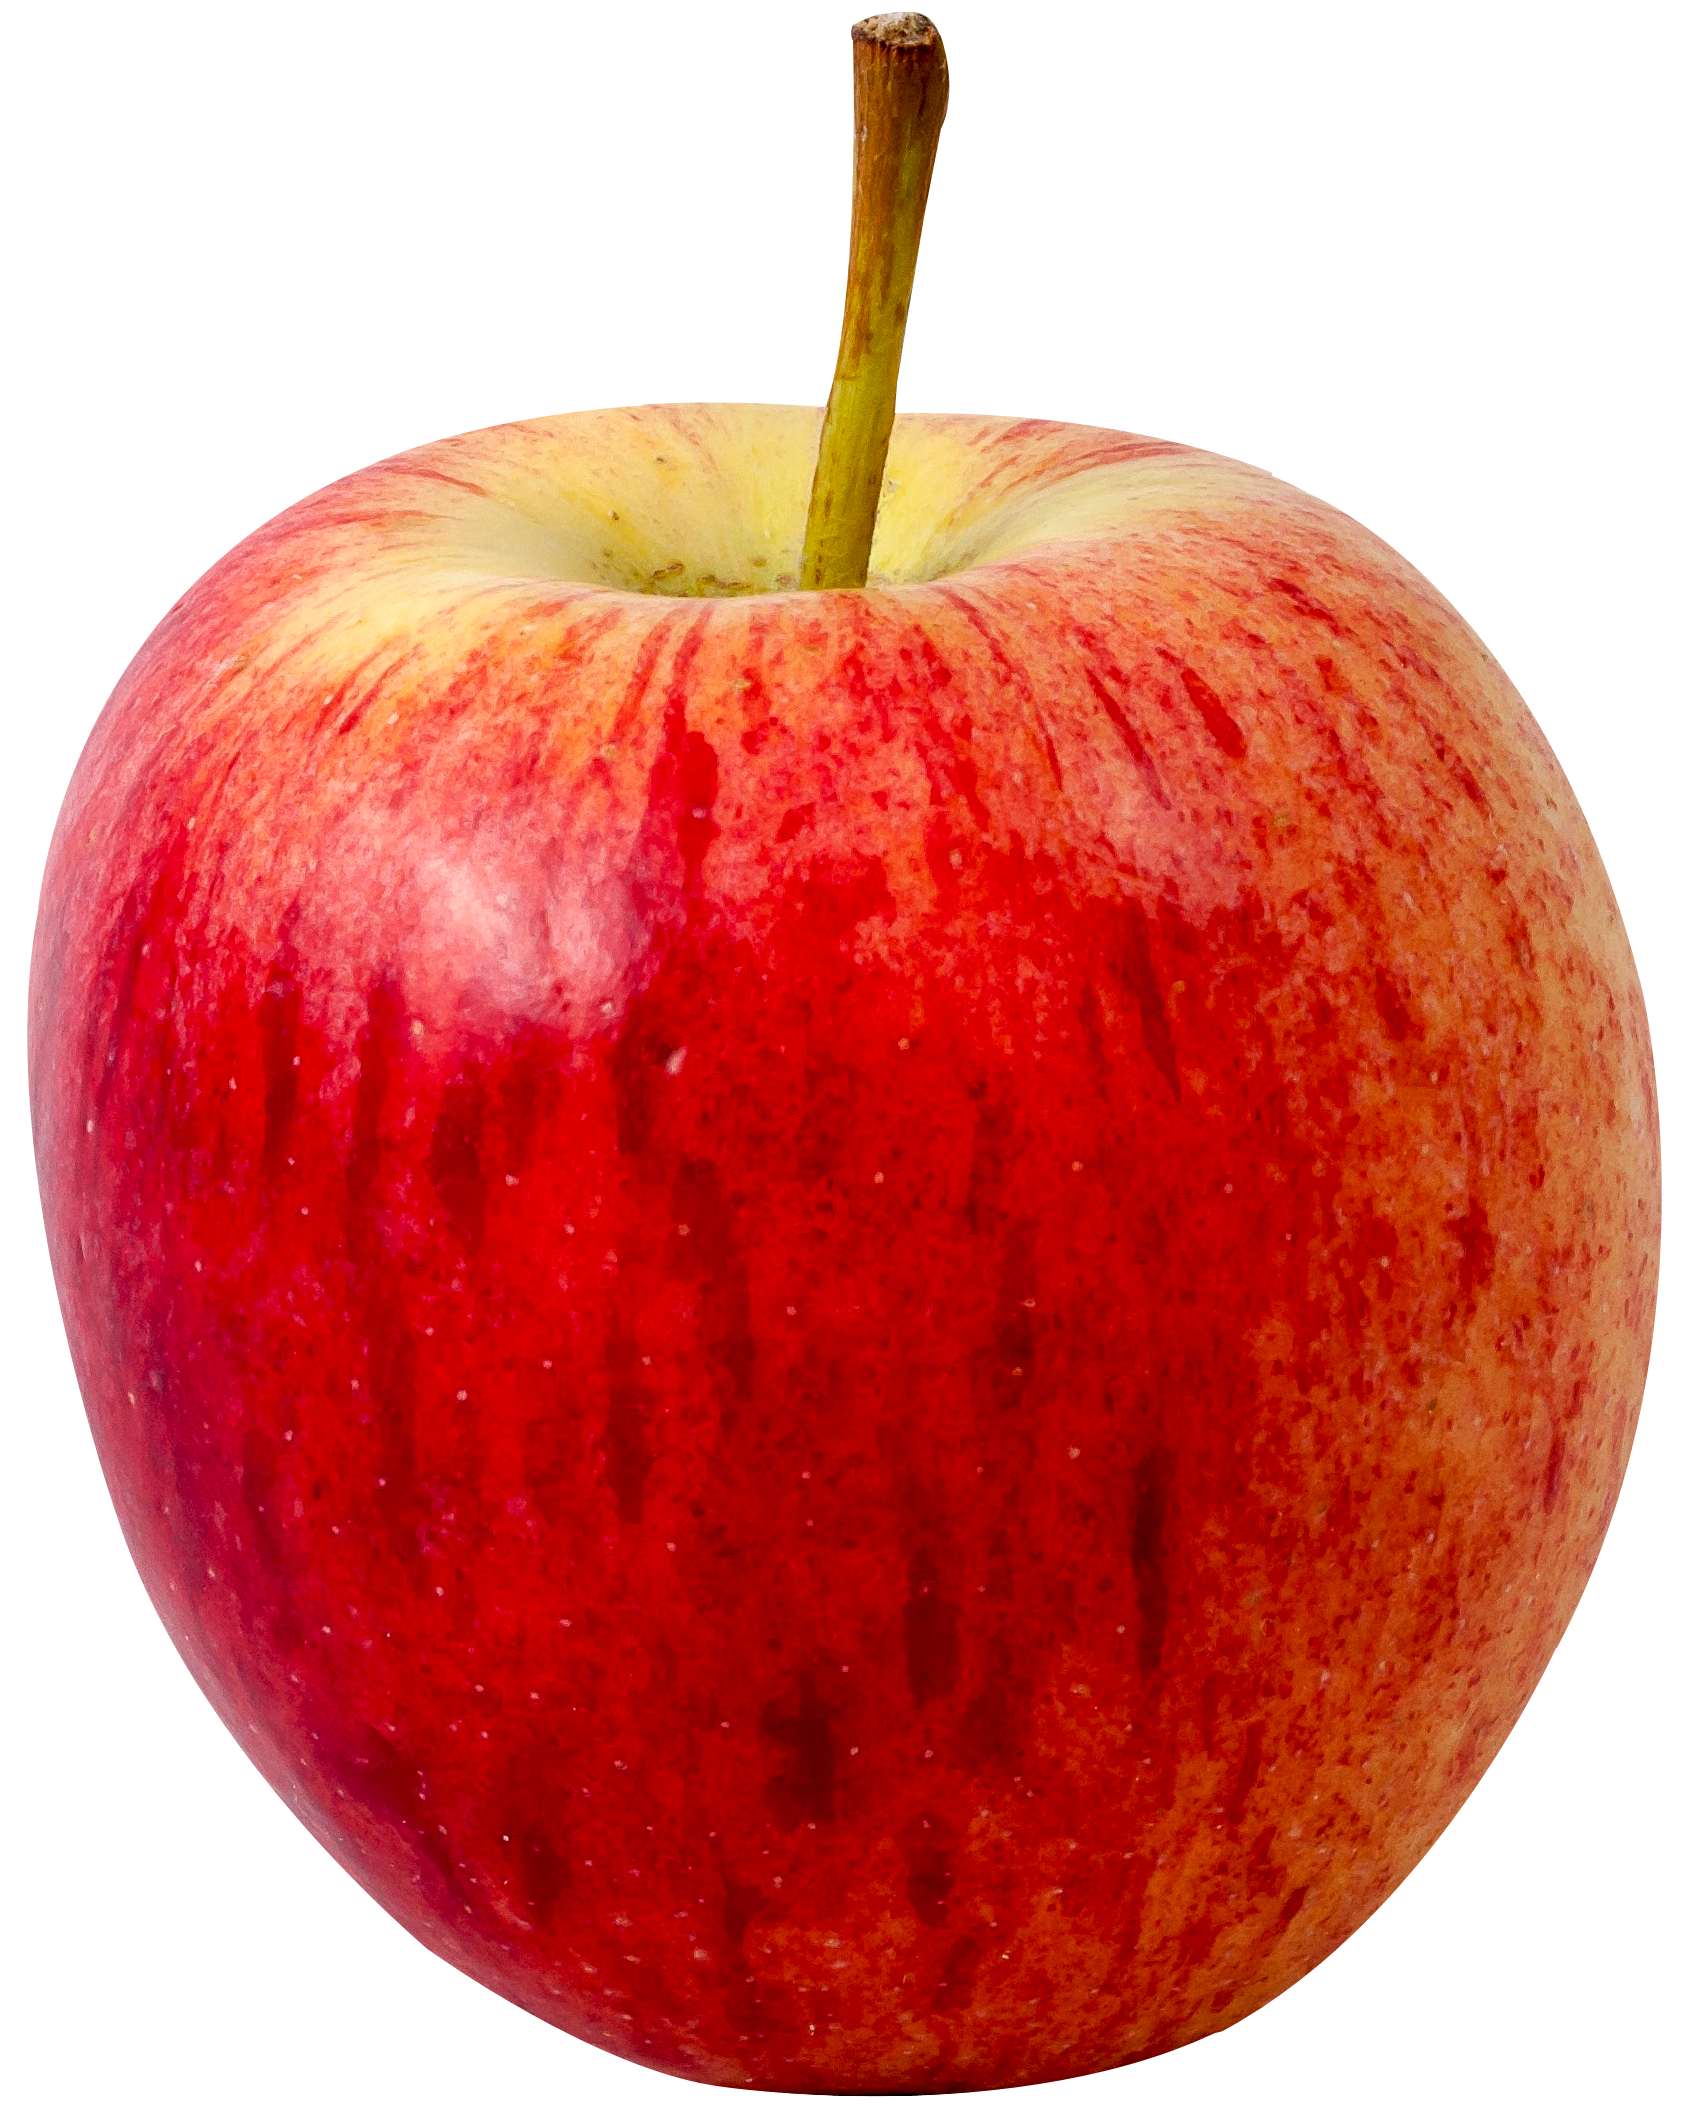 Apple Fruit Transparent Image PNG Image